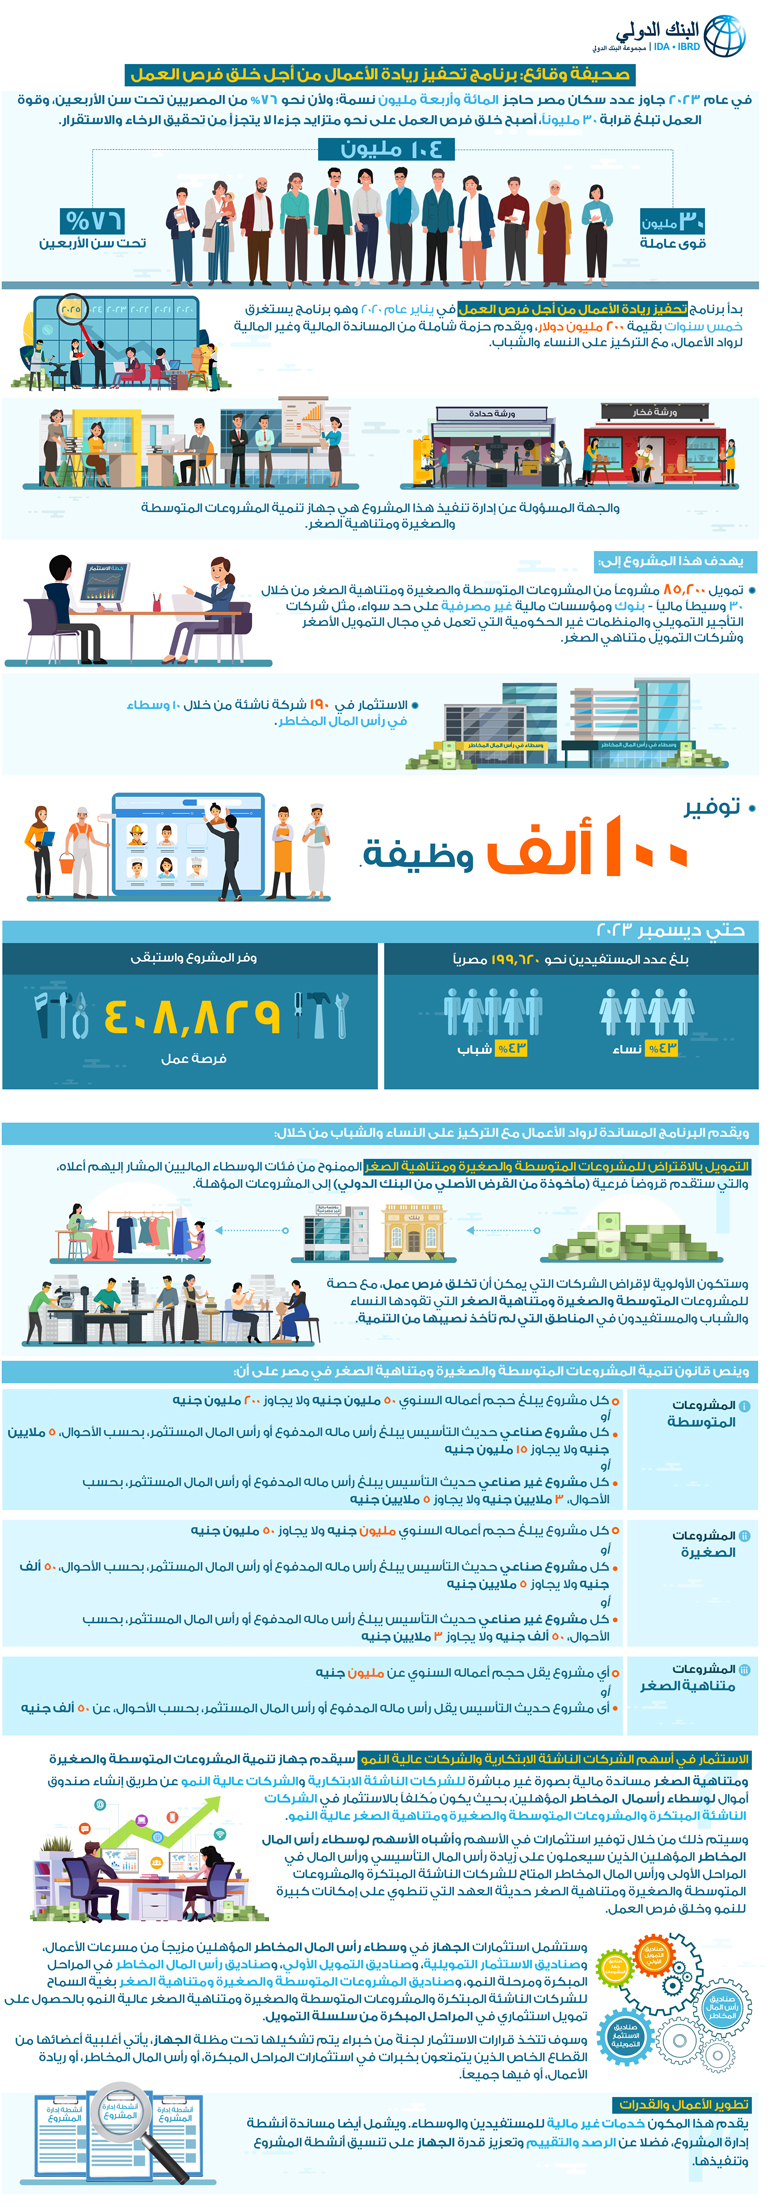 مصر: مشروع تحفيز ريادة الأعمال من أجل خلق فرص العمل